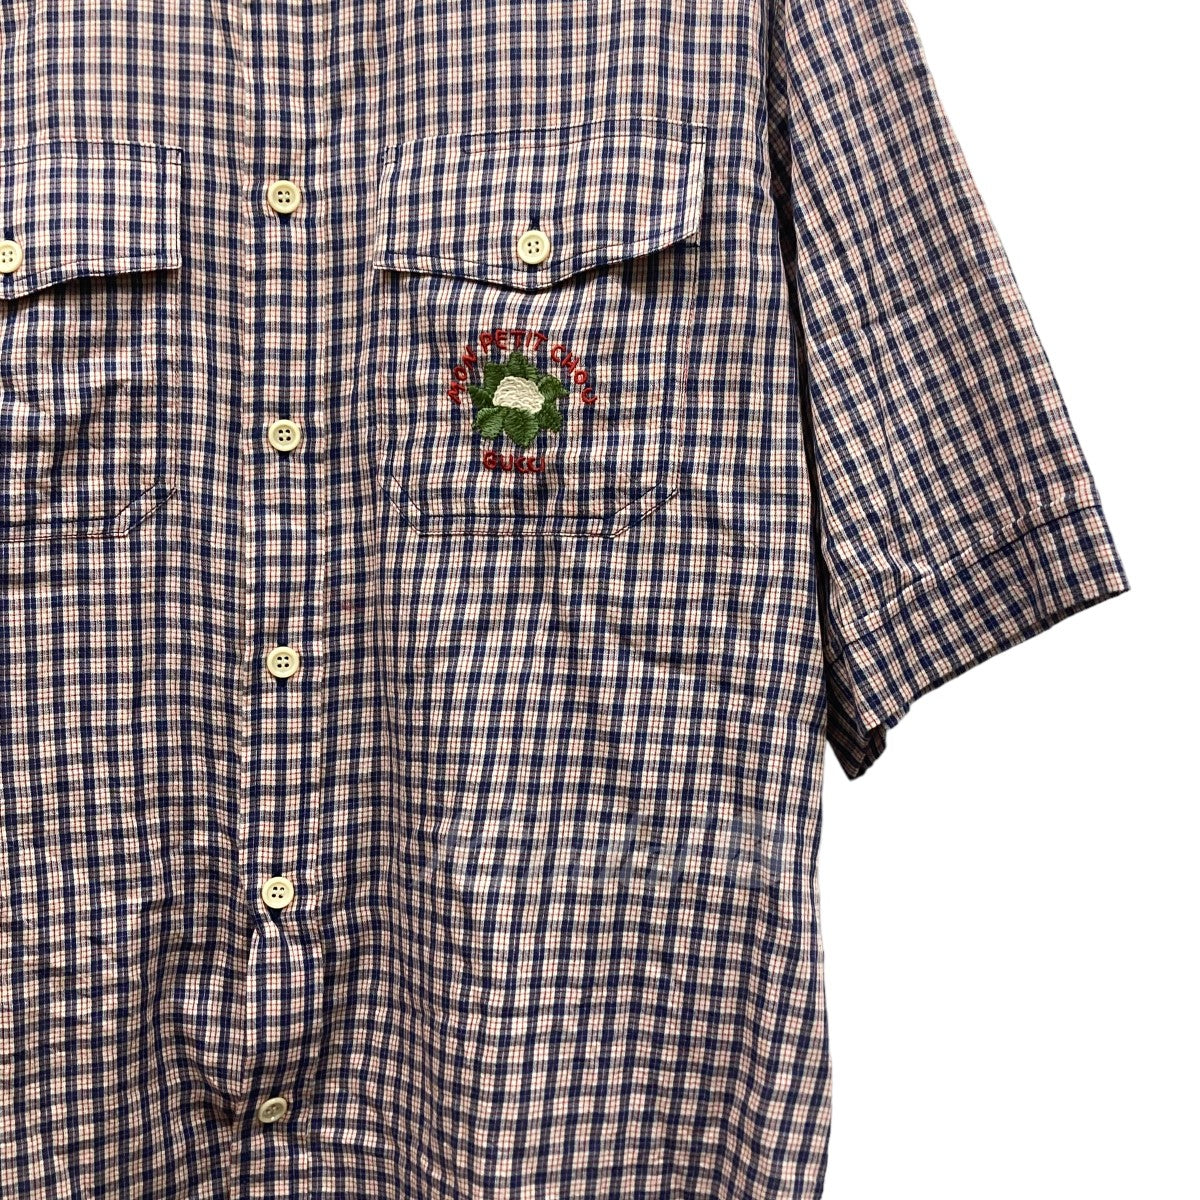 GUCCI(グッチ) 半袖チェックシャツ 654883 レッド×ネイビー サイズ 16 